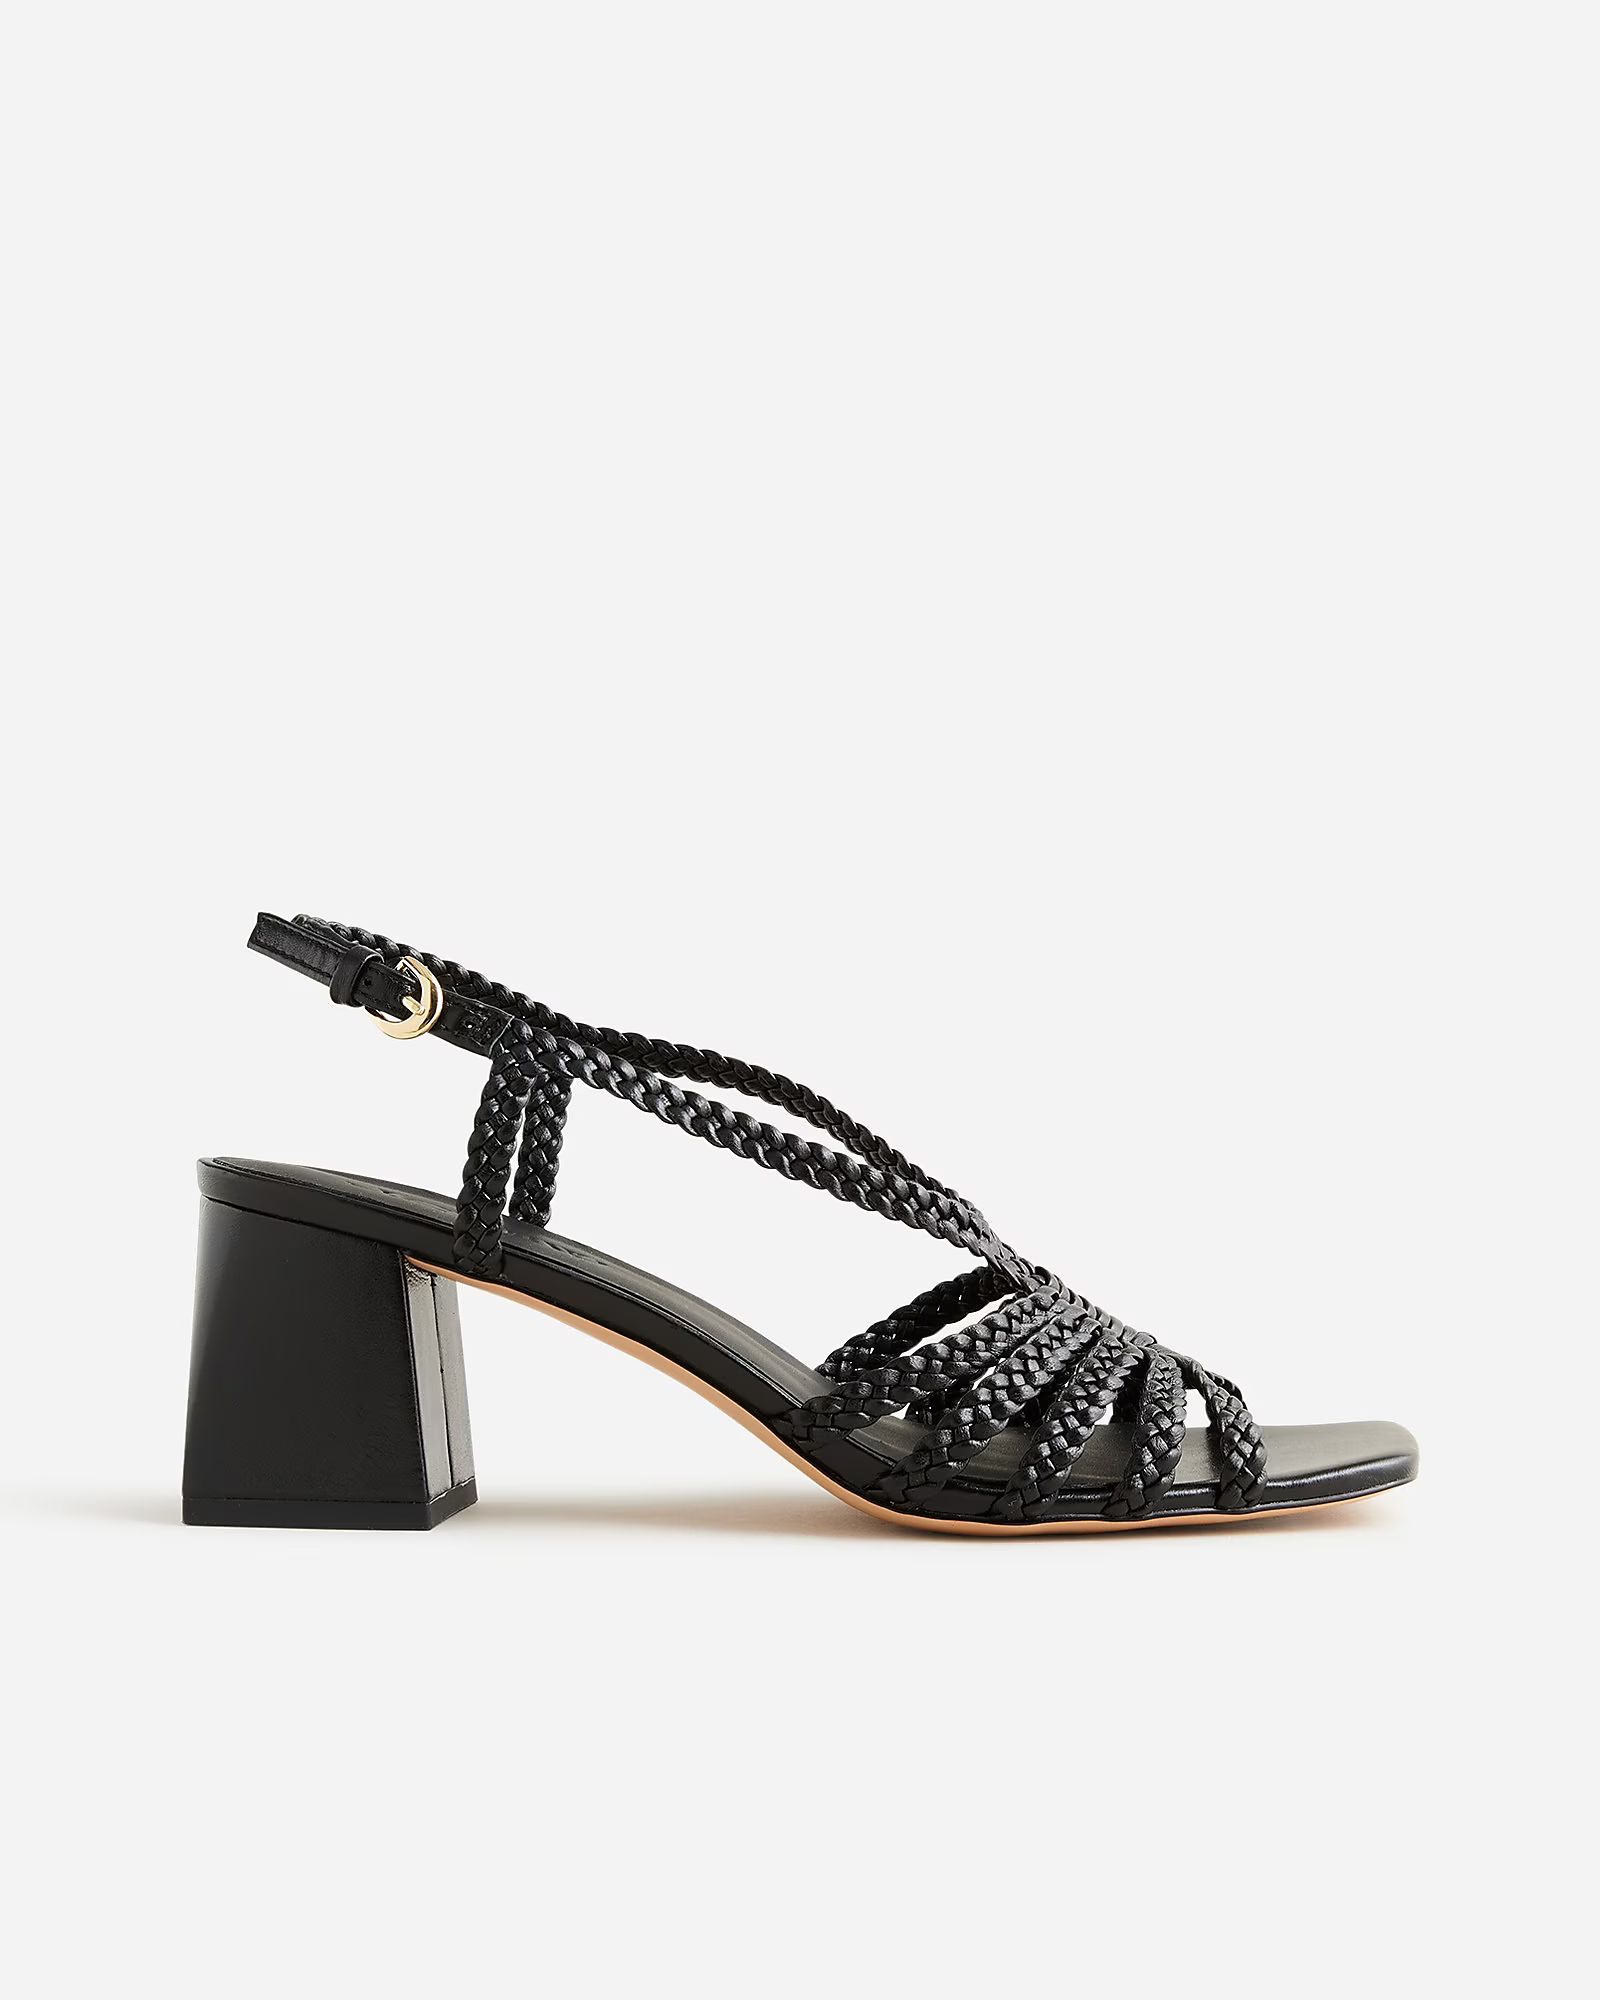 Layne braided sandal heels in leather | J.Crew US